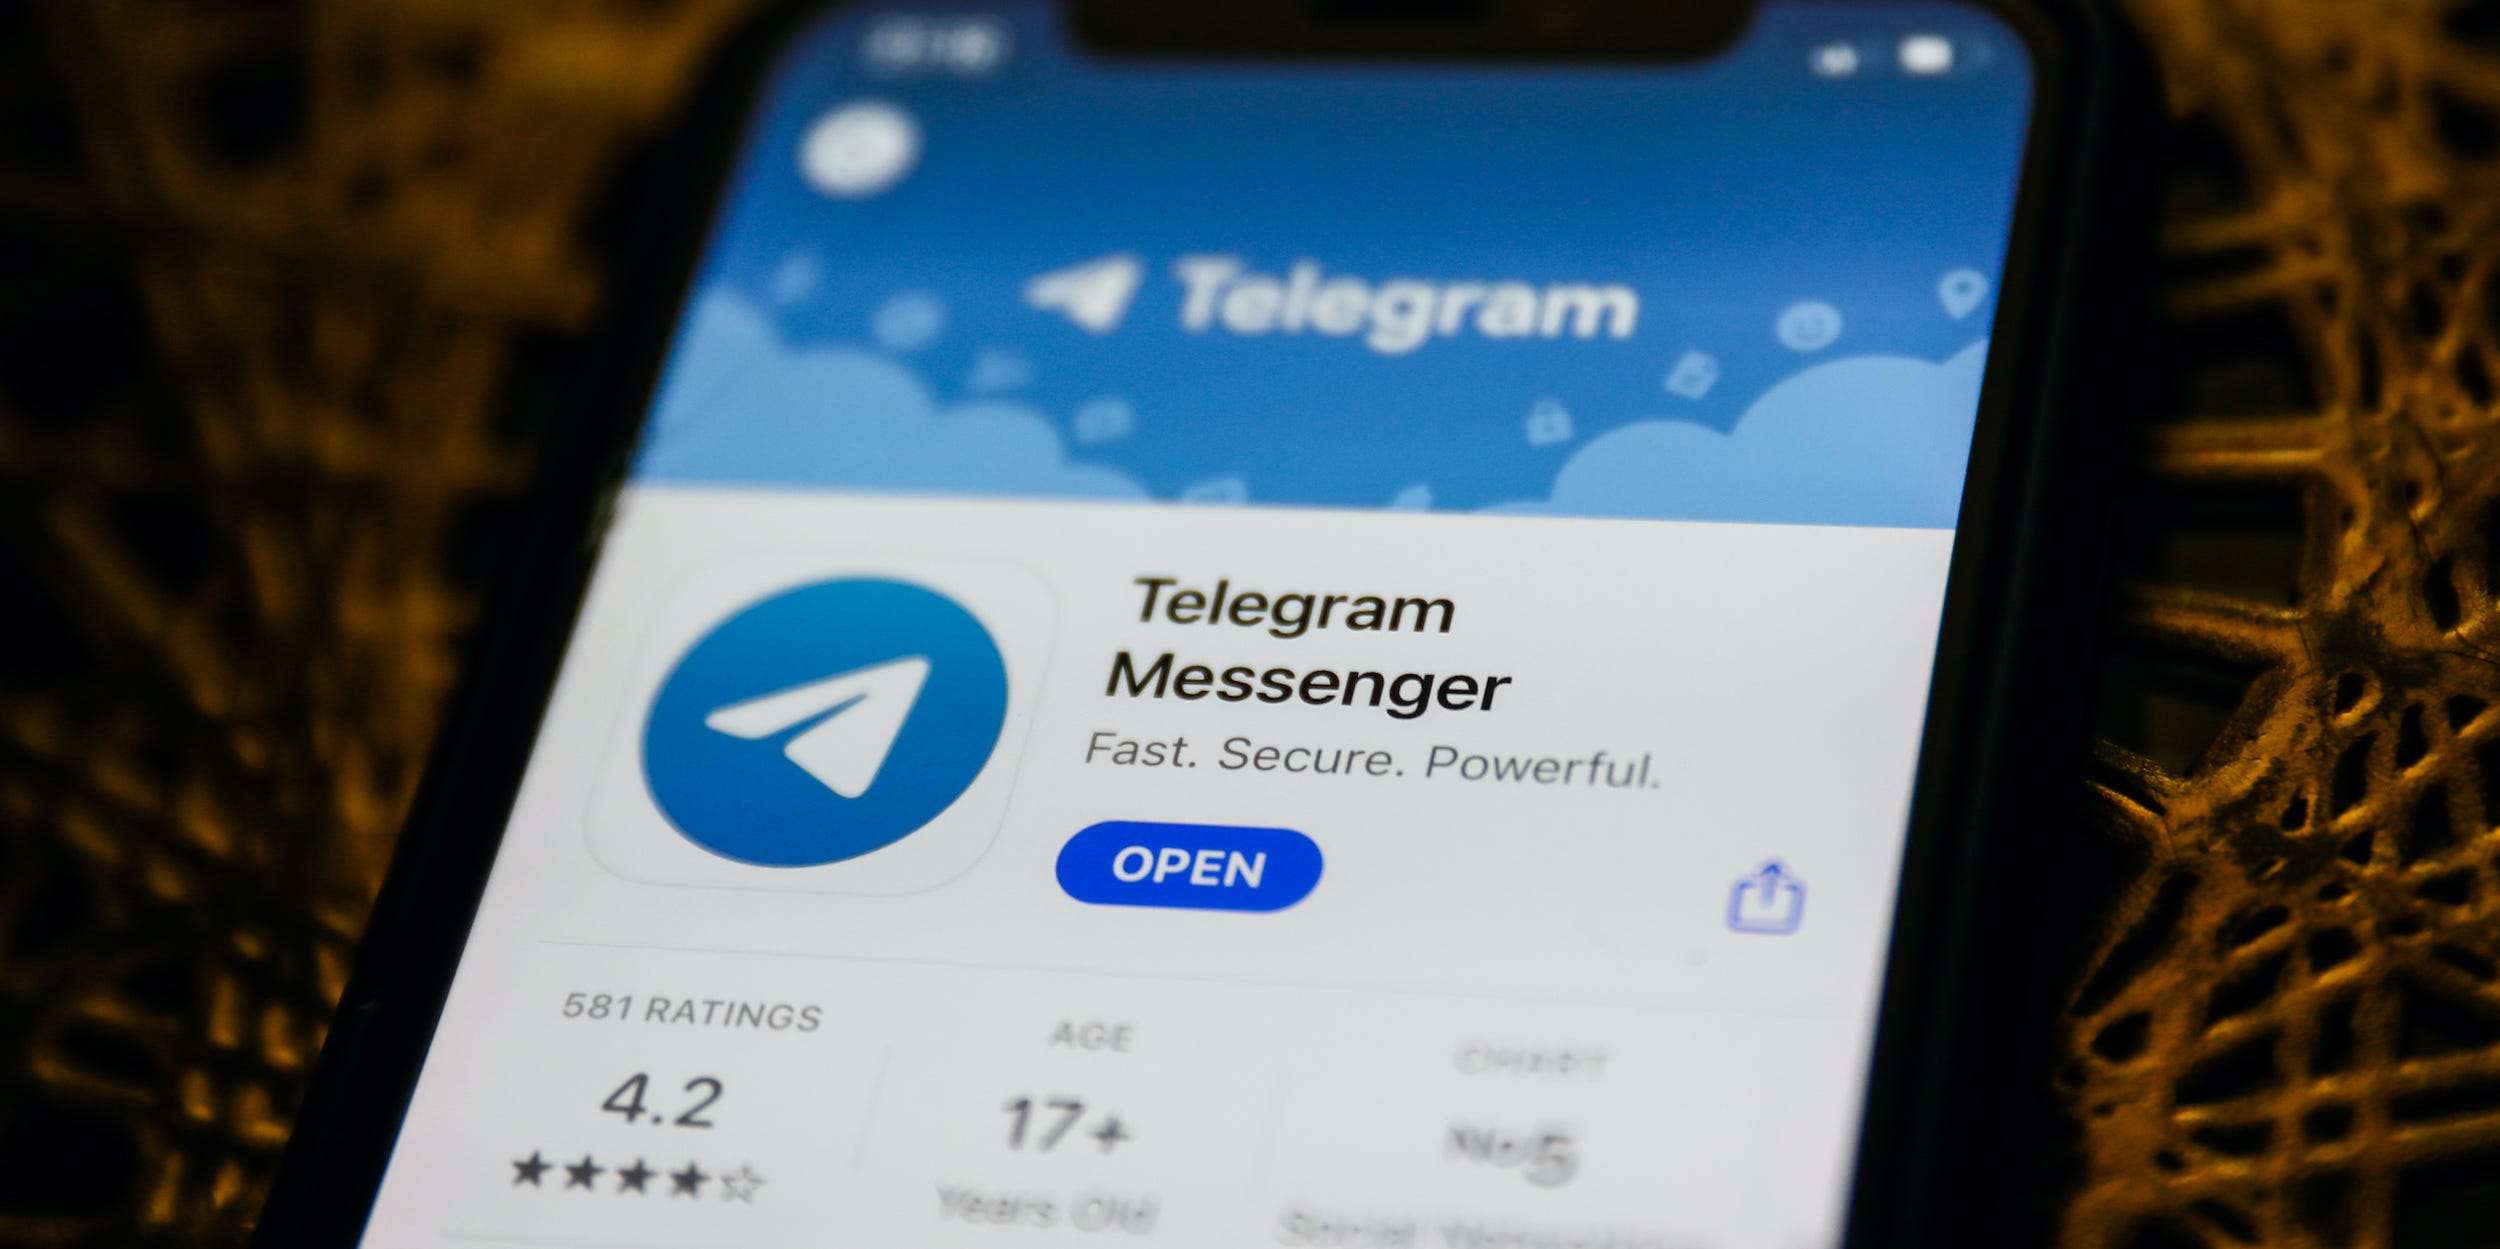 the telegram online